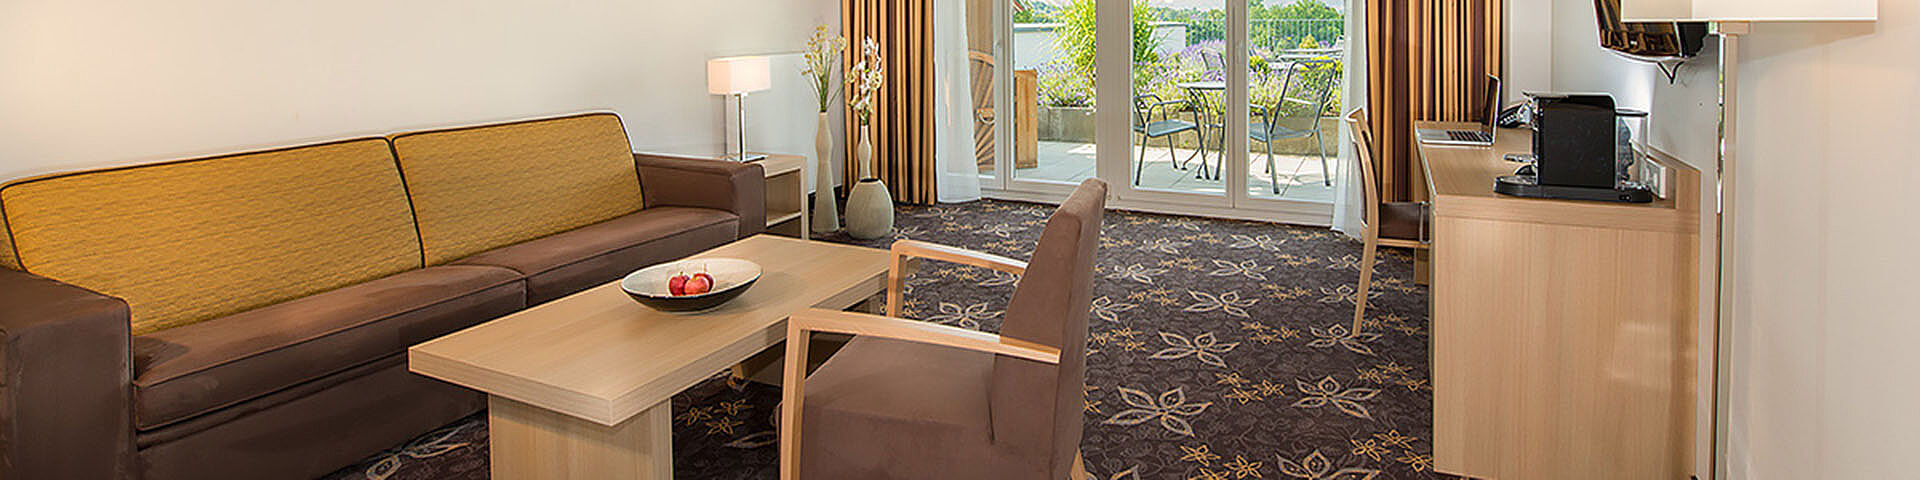 Ein Hotelzimmer mit Sofa, Tisch, Sessel und Schränkchen ist zu sehen.